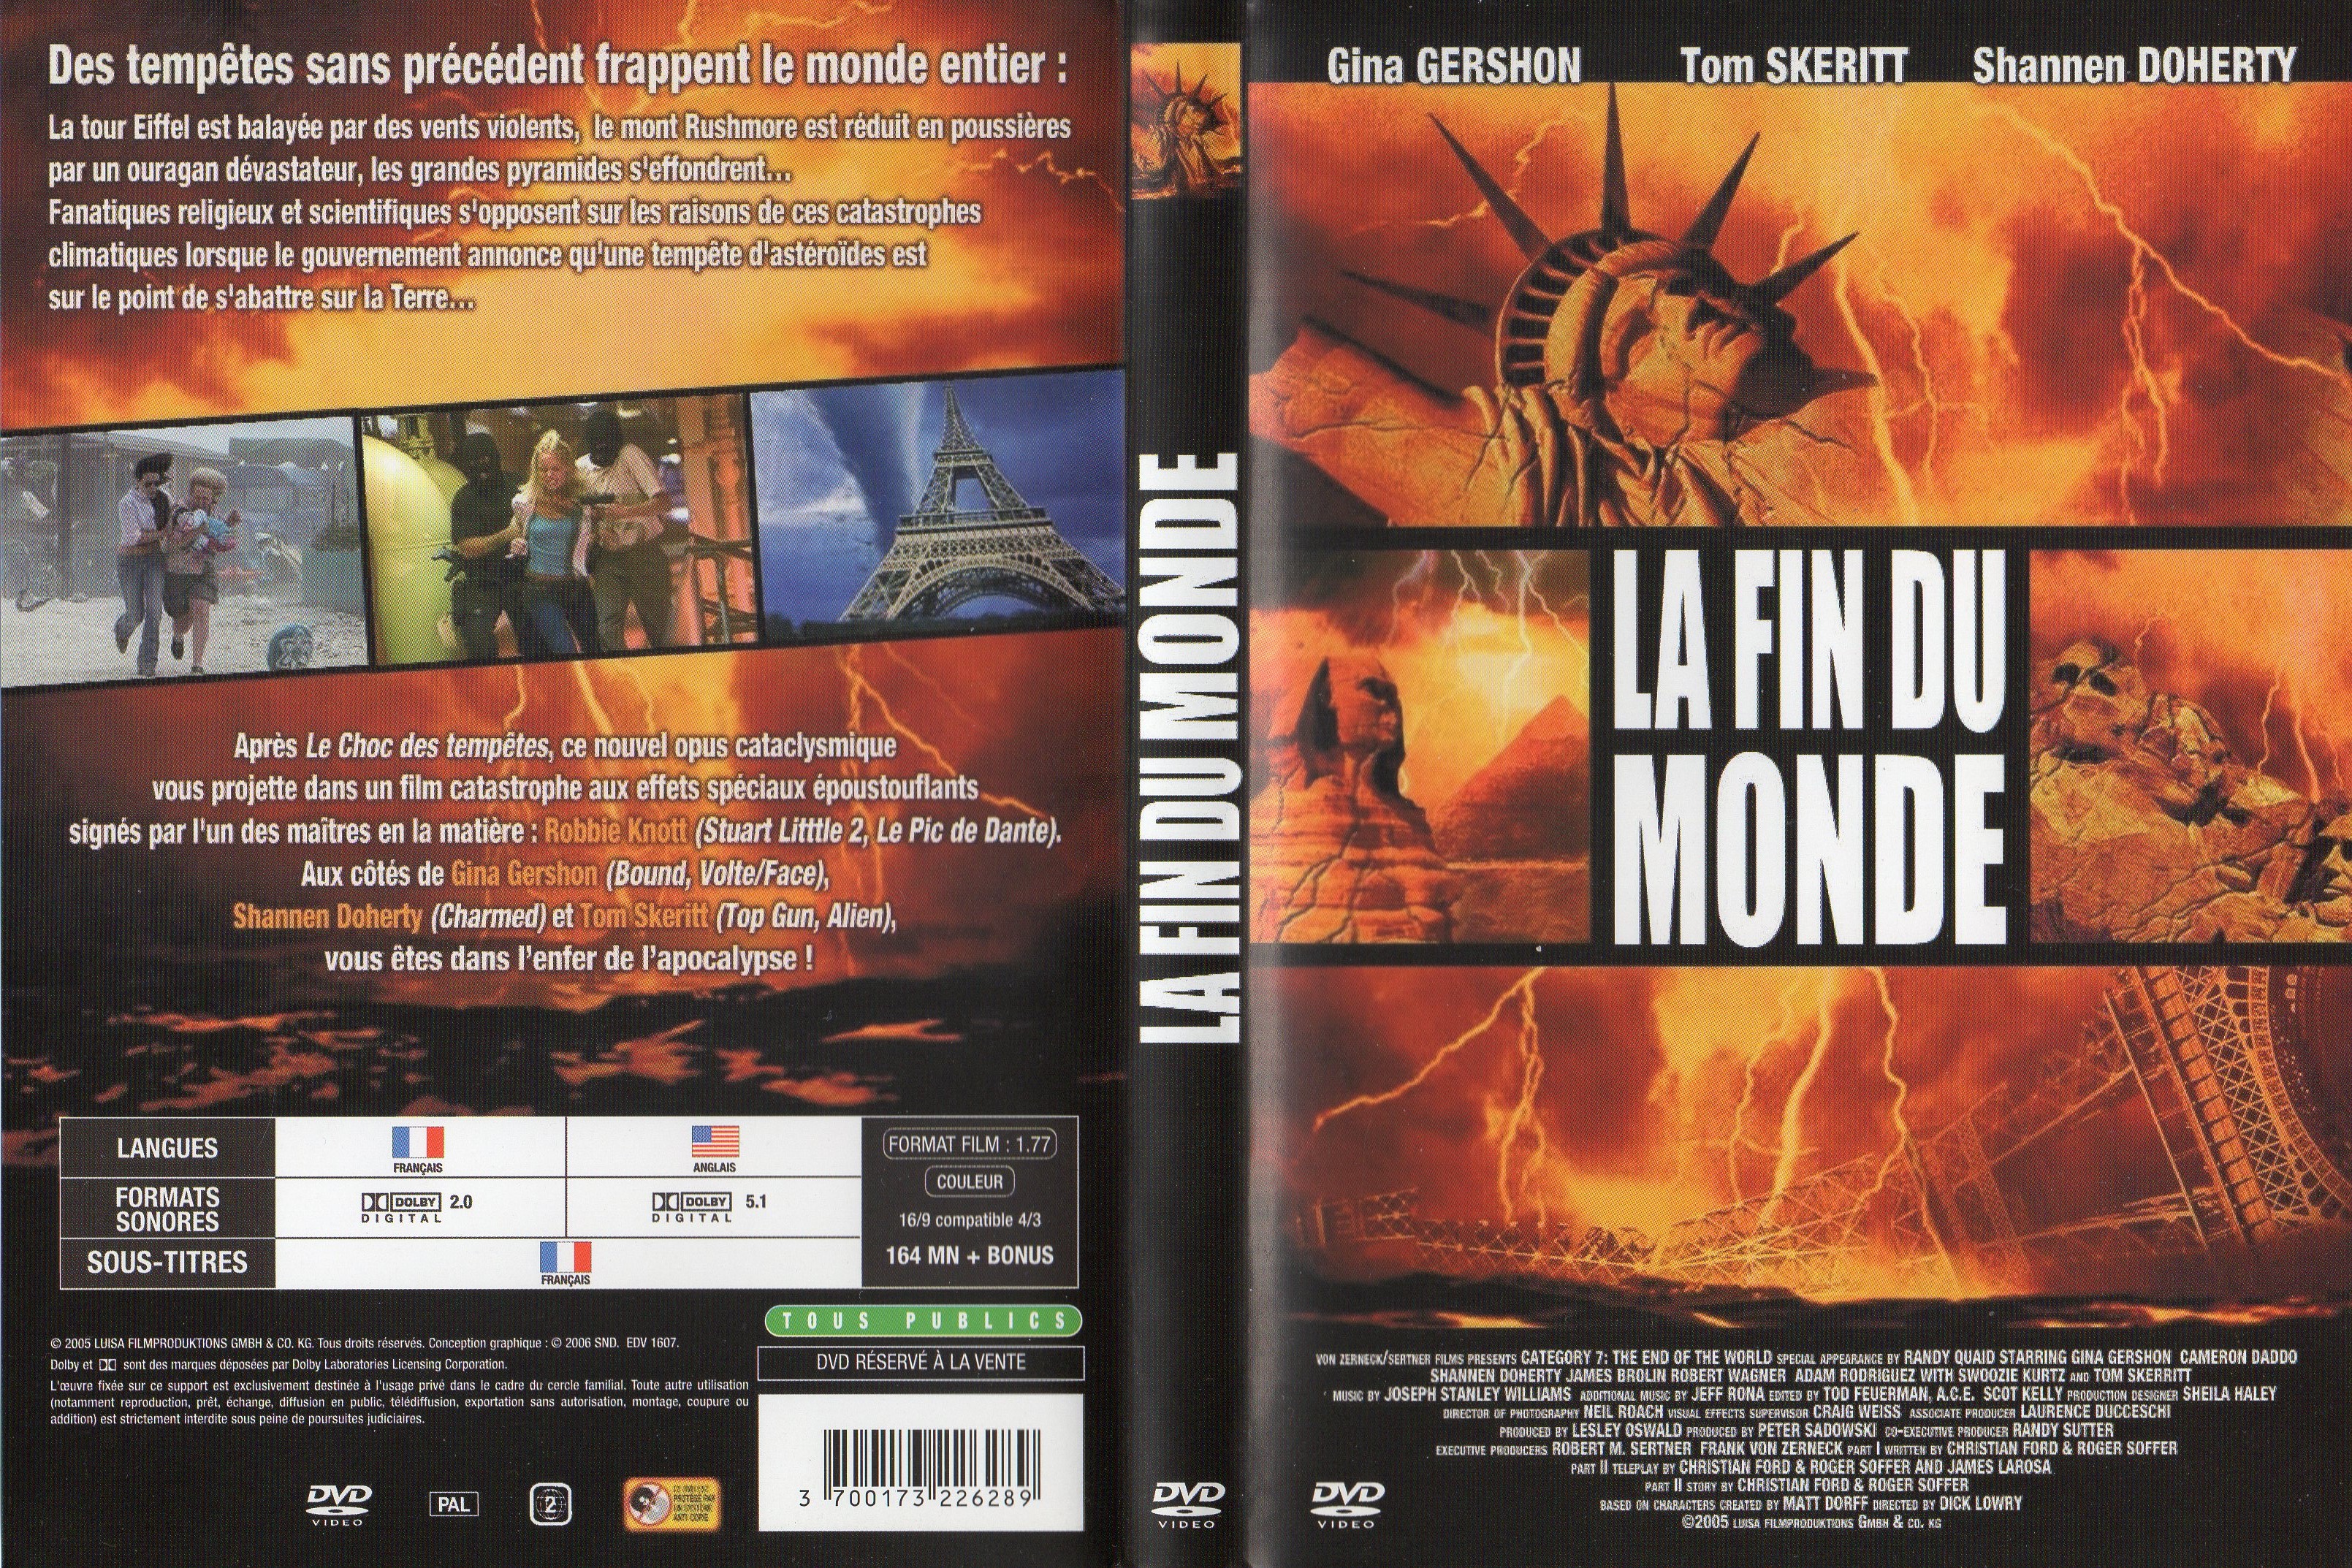 Jaquette DVD La fin du monde v2